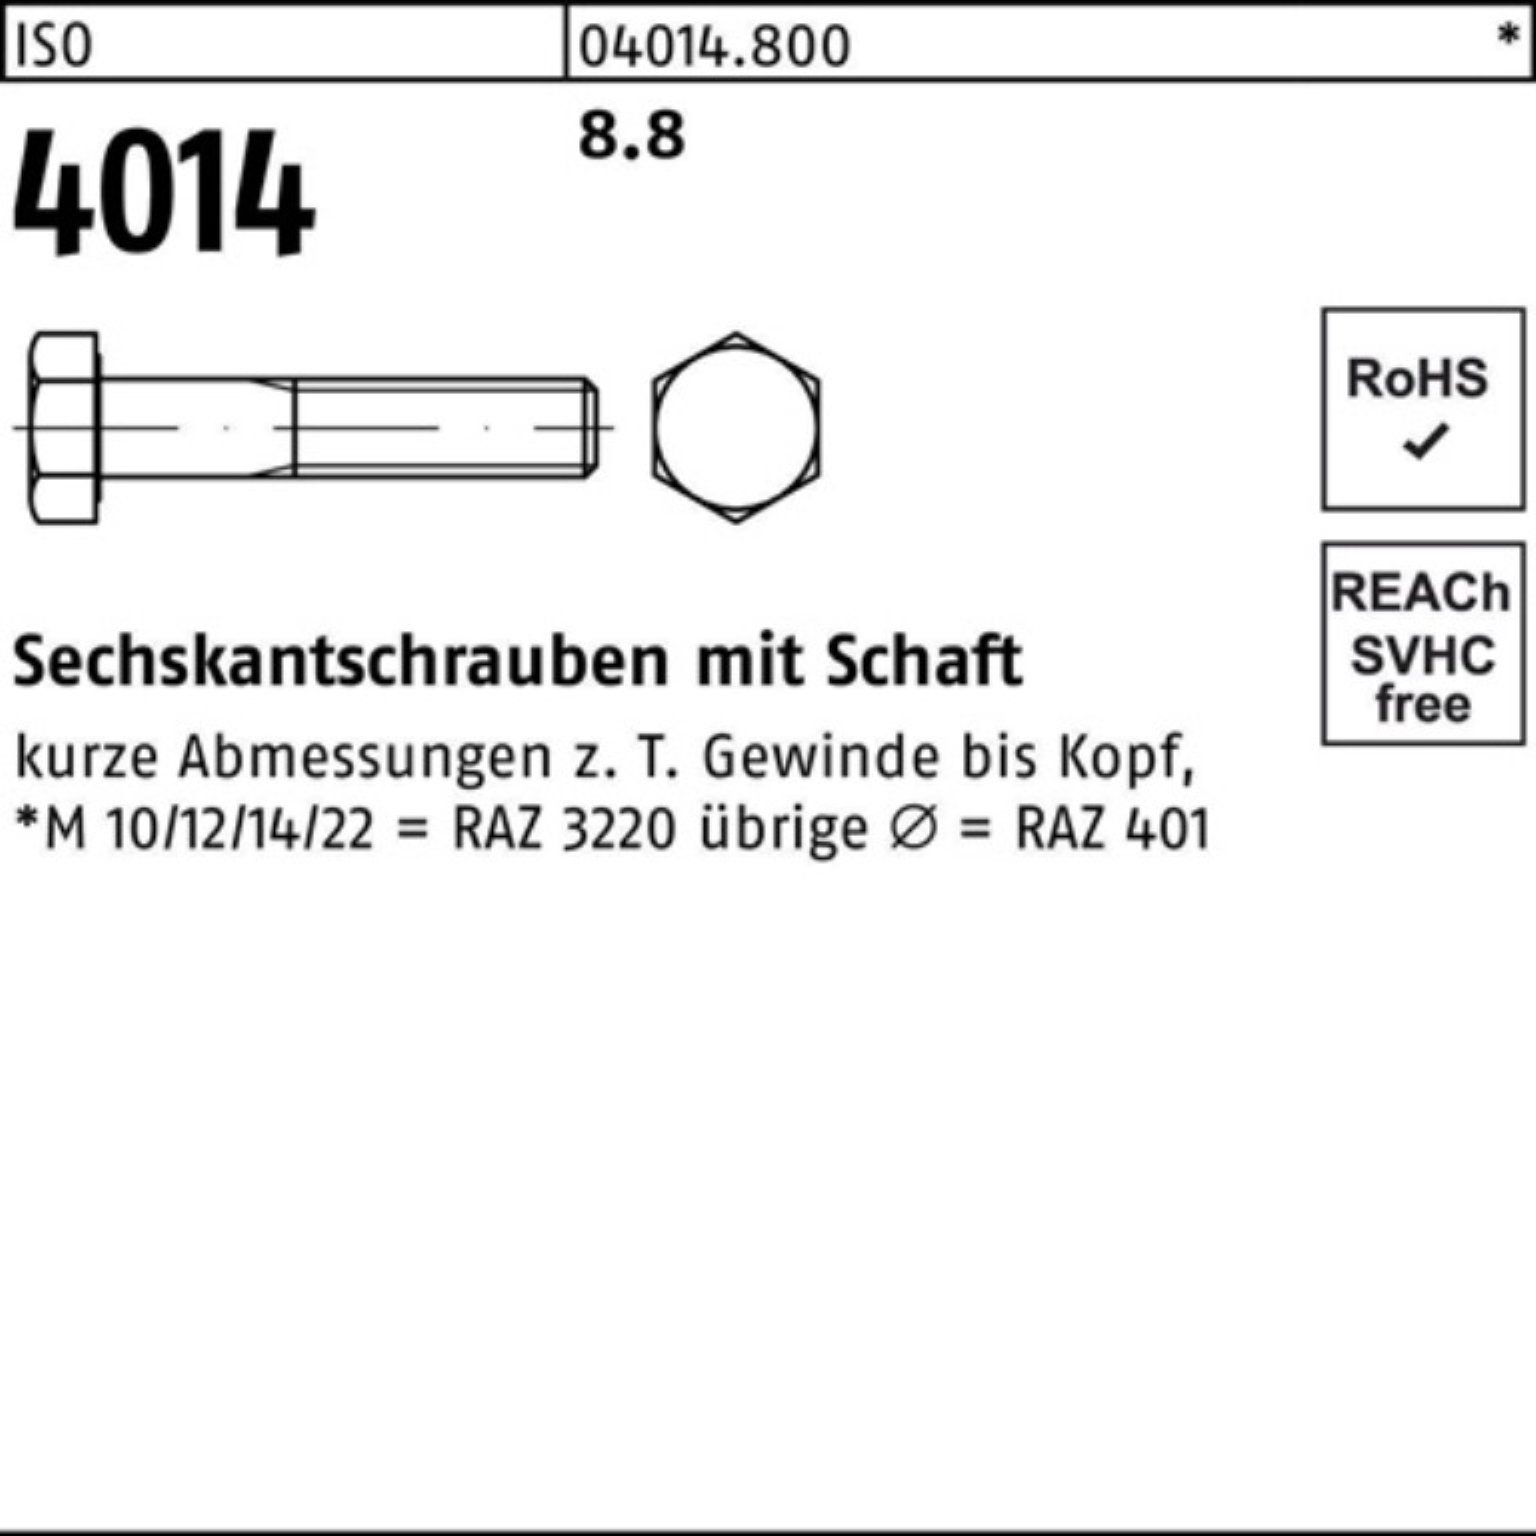 4014 1 Bufab Sechskantschraube 520 Stück 8.8 100er Pack Schaft Sechskantschraube M30x ISO ISO